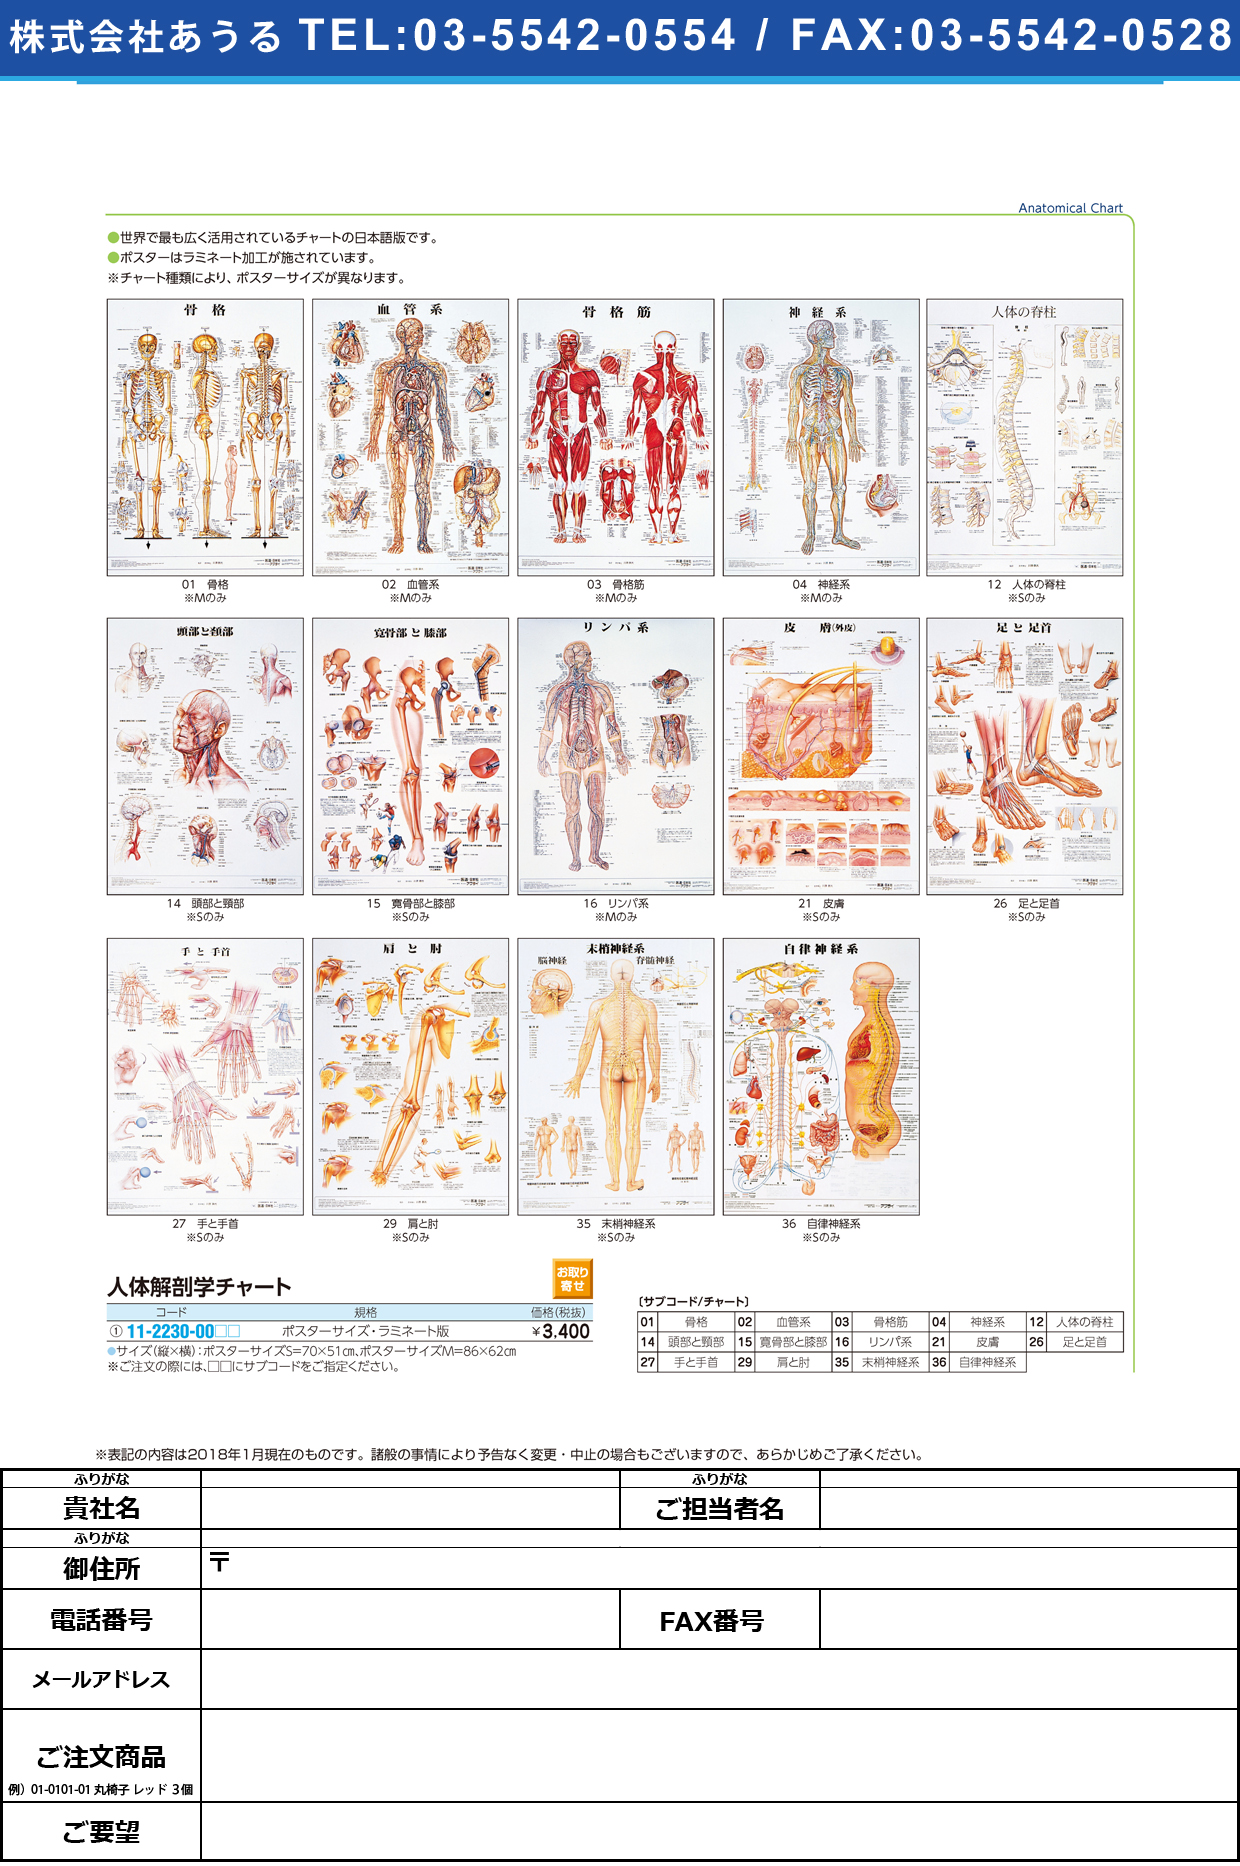 (11-2230-00)人体解剖学チャート（ポスターサイズ） ﾗﾐﾈｰﾄﾊﾞﾝ ｼﾞﾝﾀｲｶｲﾎﾞｳｶﾞｸﾁｬｰﾄ 皮膚Ｓ(京都科学)【1枚単位】【2019年カタログ商品】